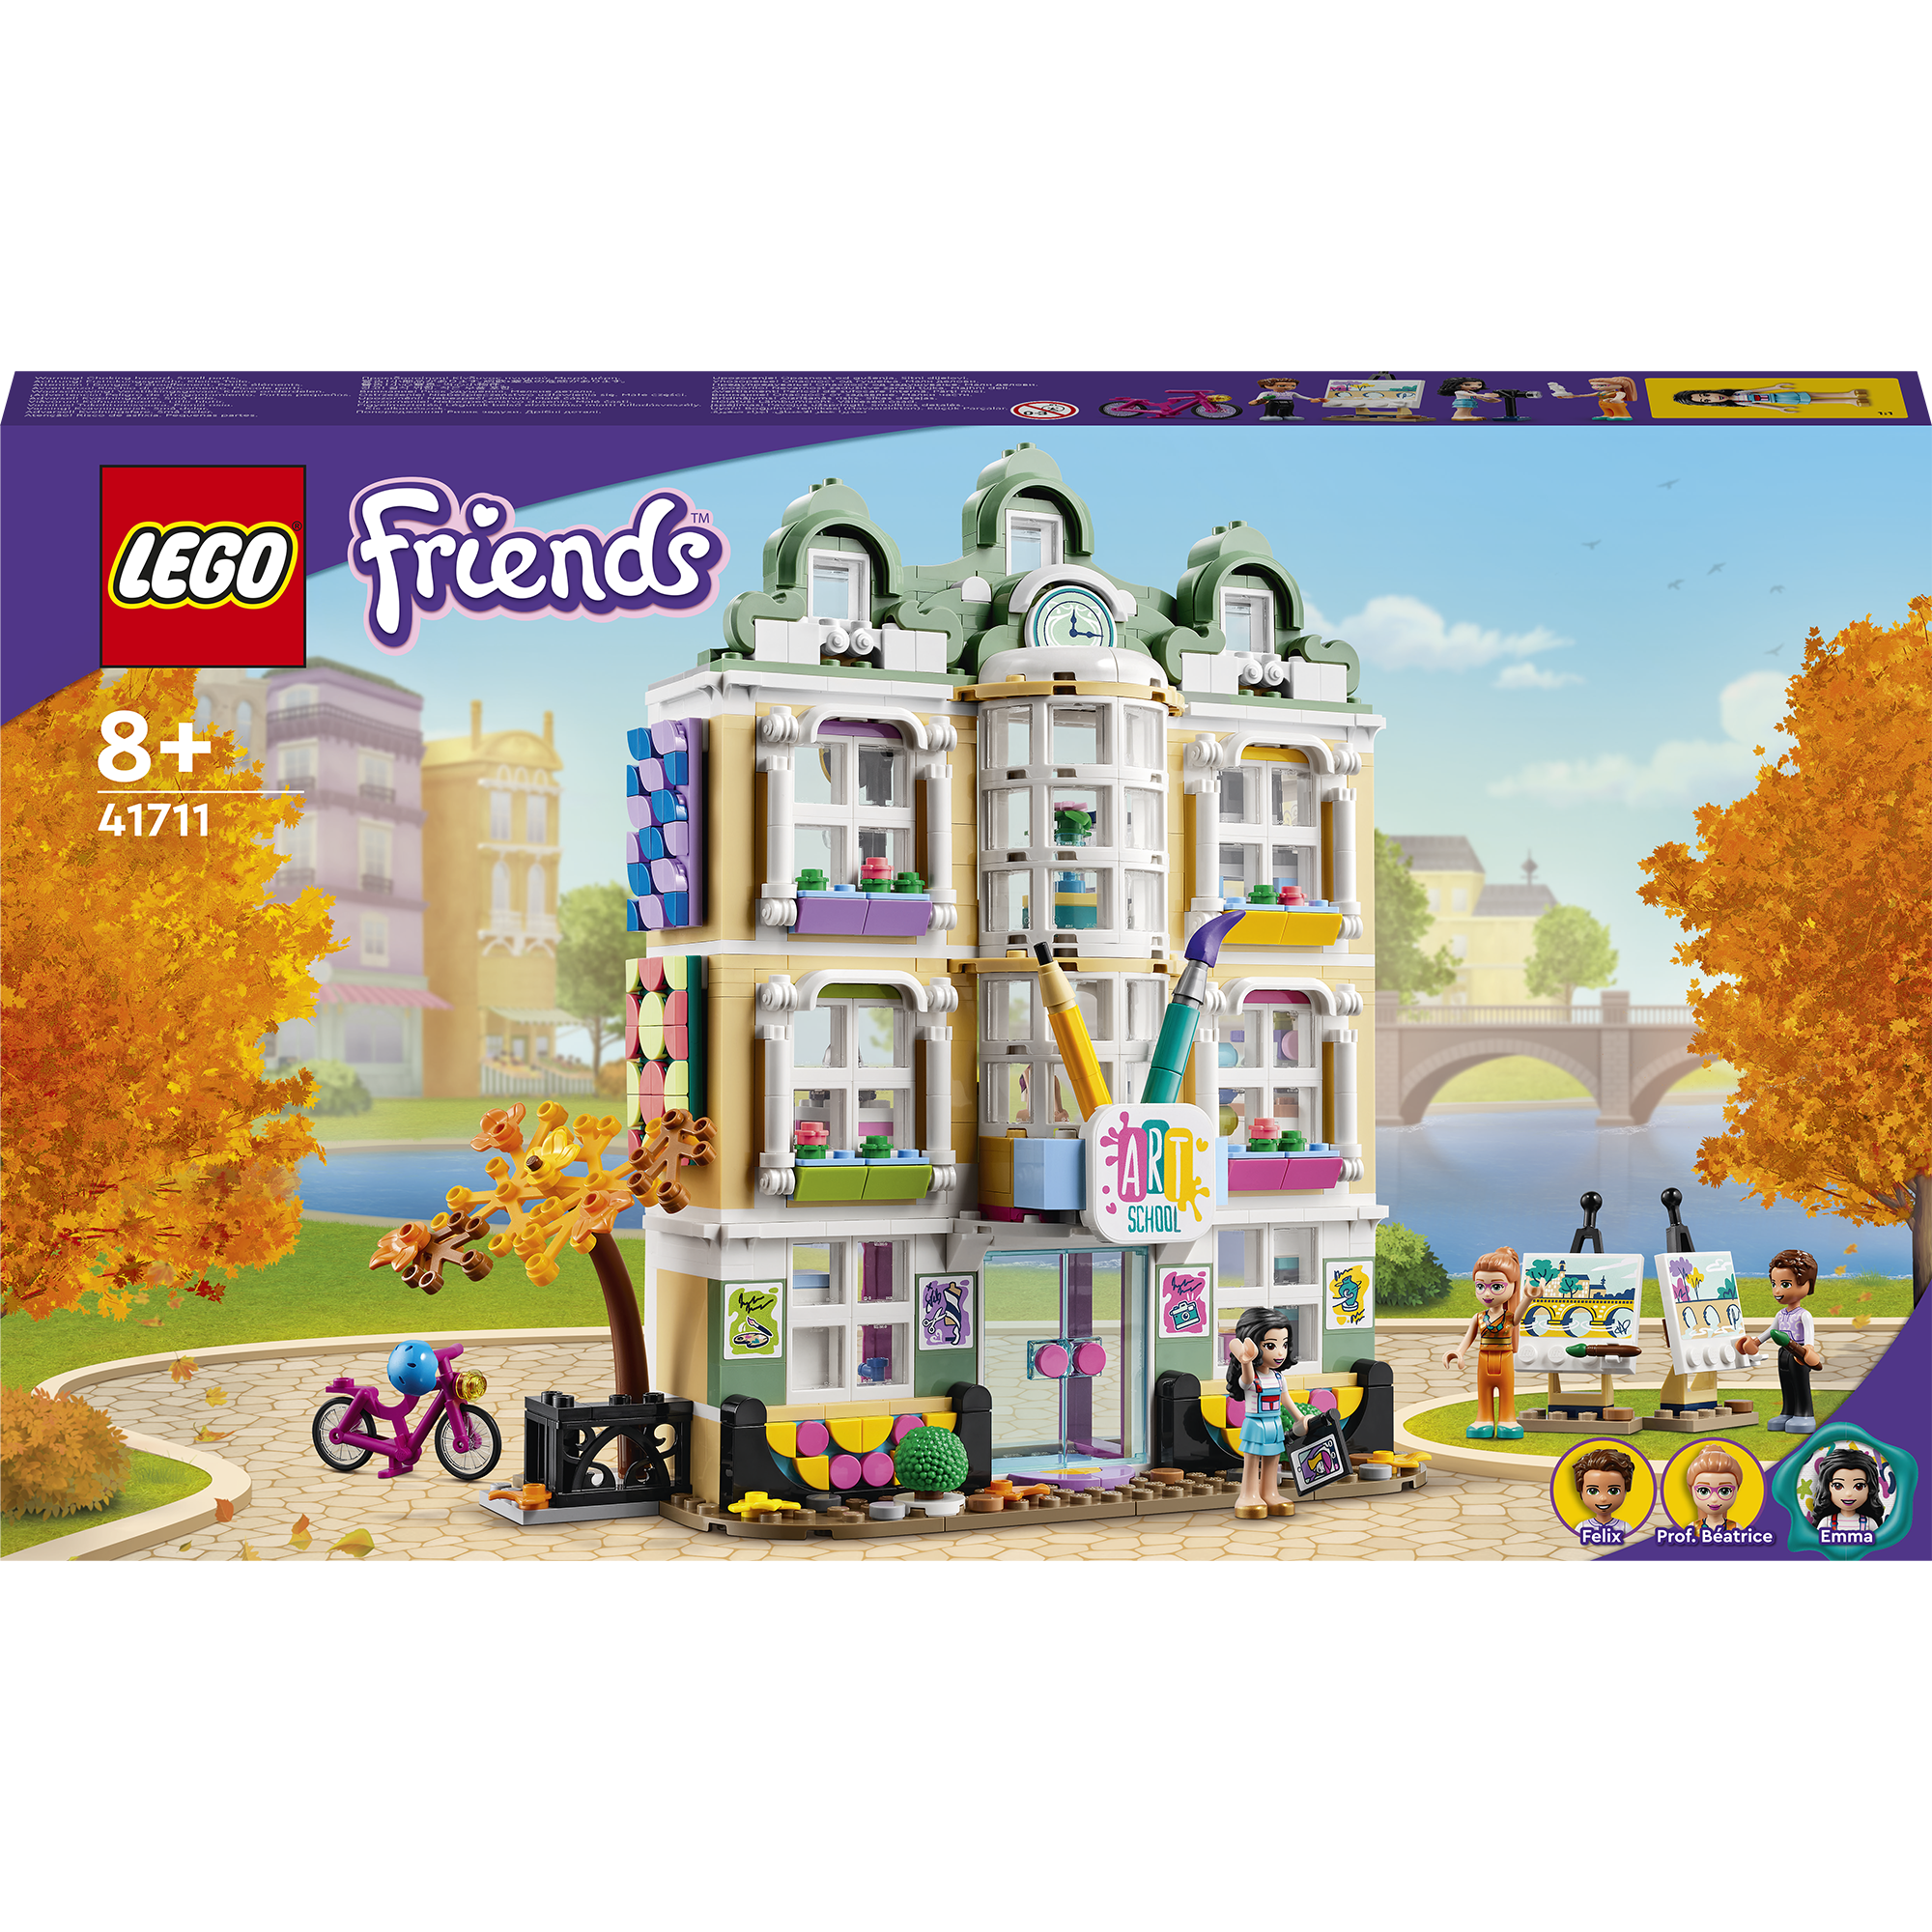 Fotografie LEGO® Friends - Scoala de arte a Emmei 41711, 844 piese